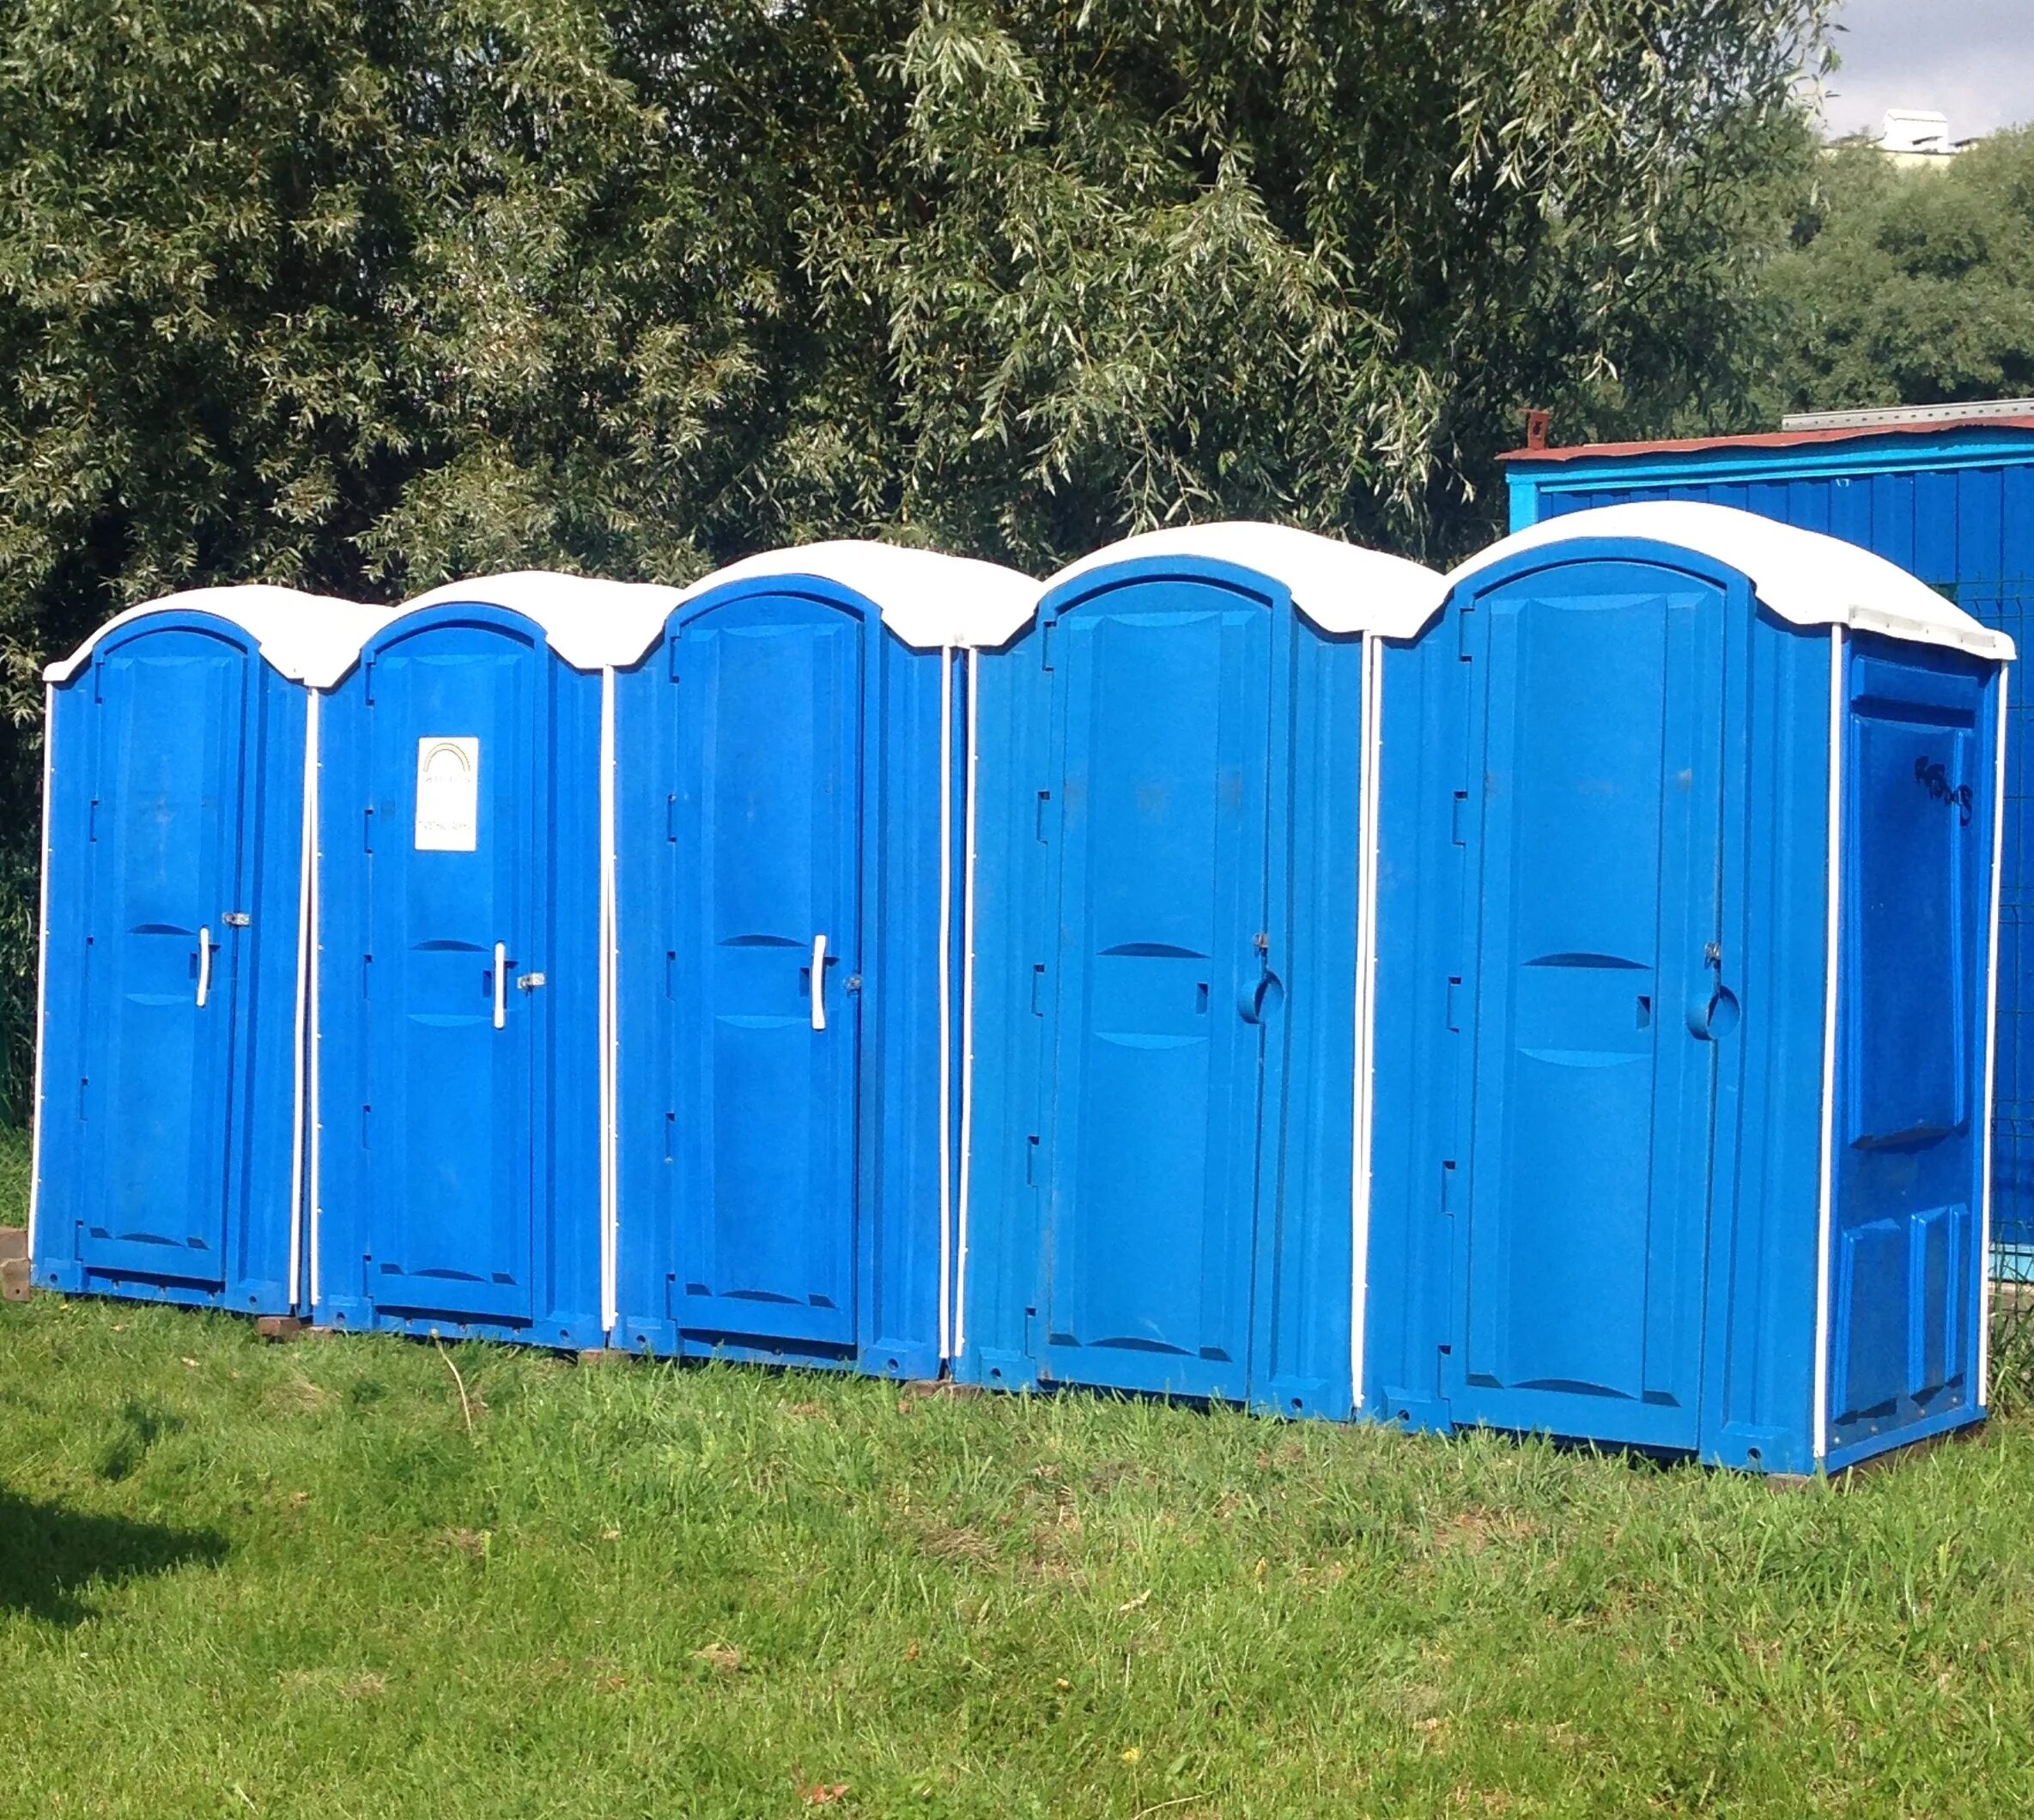 Кабинка туалета. Экосервис туалетные кабины. Синяя туалетная кабинка. Биотуалет уличный. Биотуалеты уличные кабины.